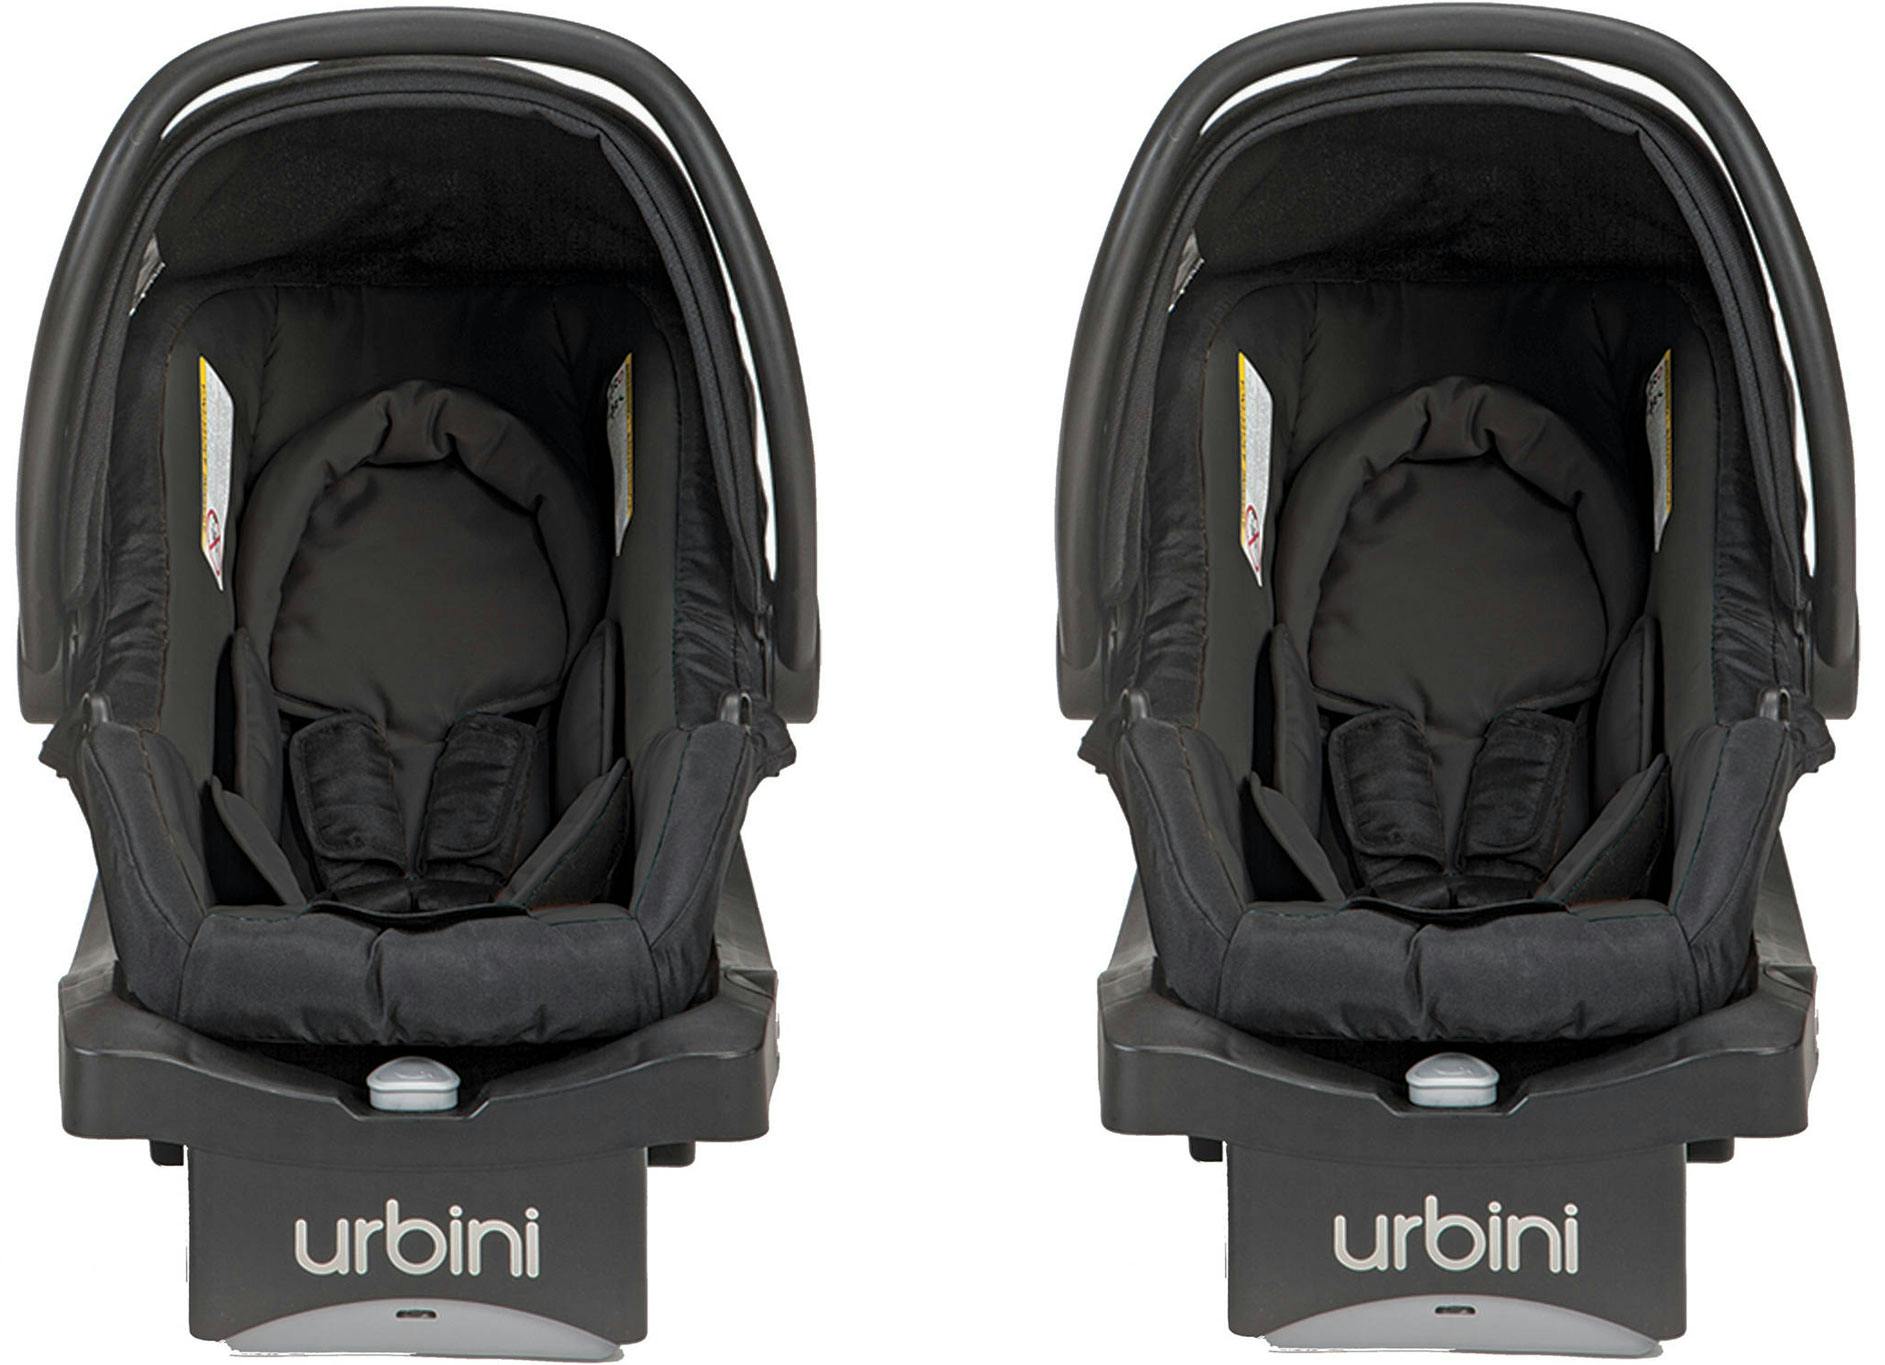 urbini car seat price